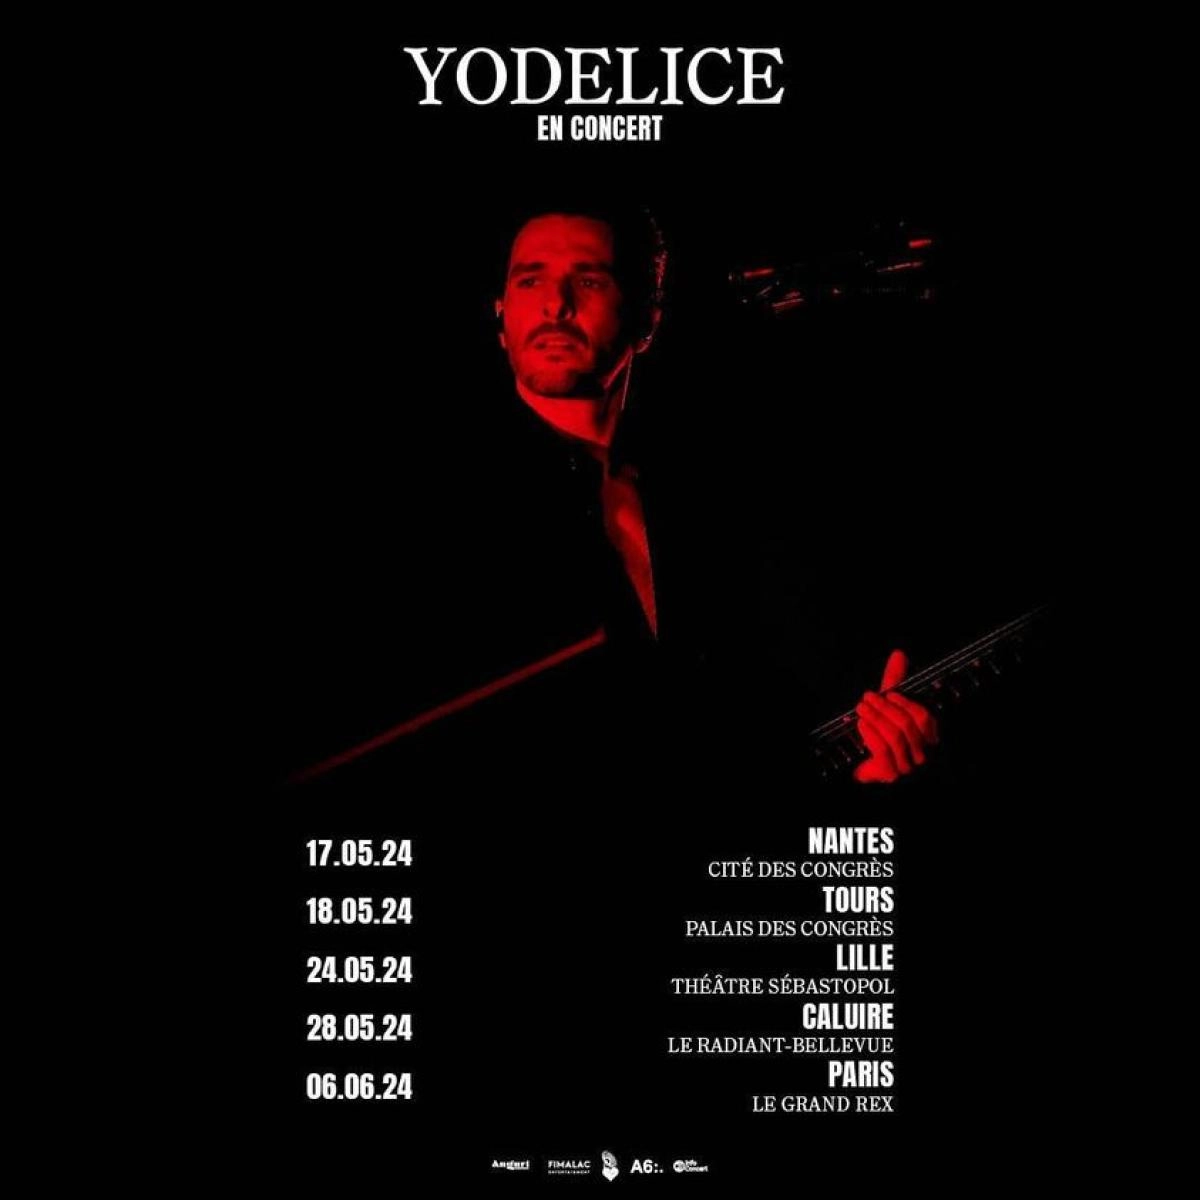 Yodelice en Theatre Sebastopol Tickets